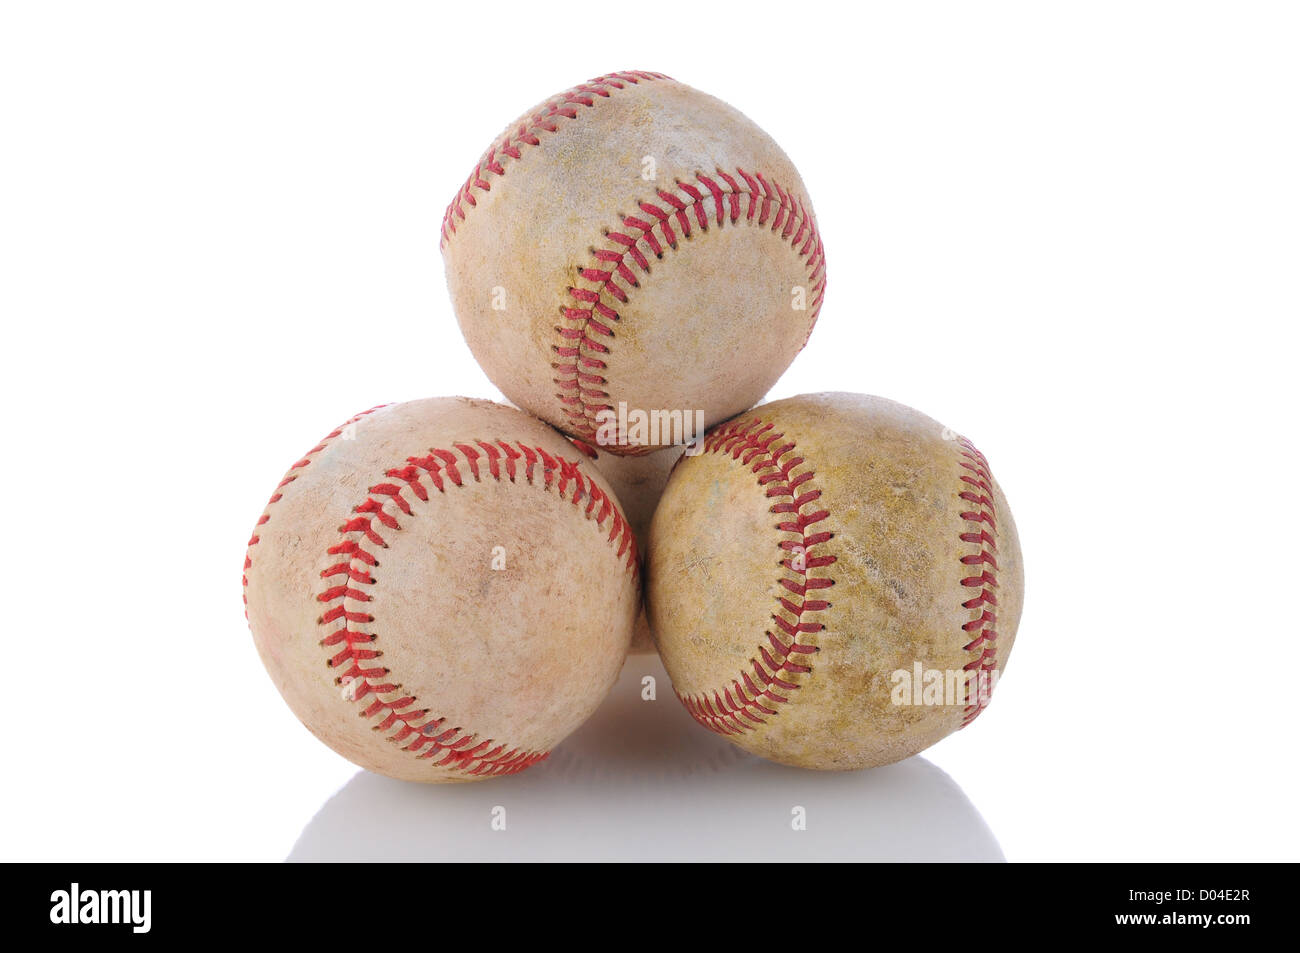 Primo piano di una pila di ben utilizzati baseballs. Formato orizzontale su uno sfondo bianco con la riflessione. Foto Stock